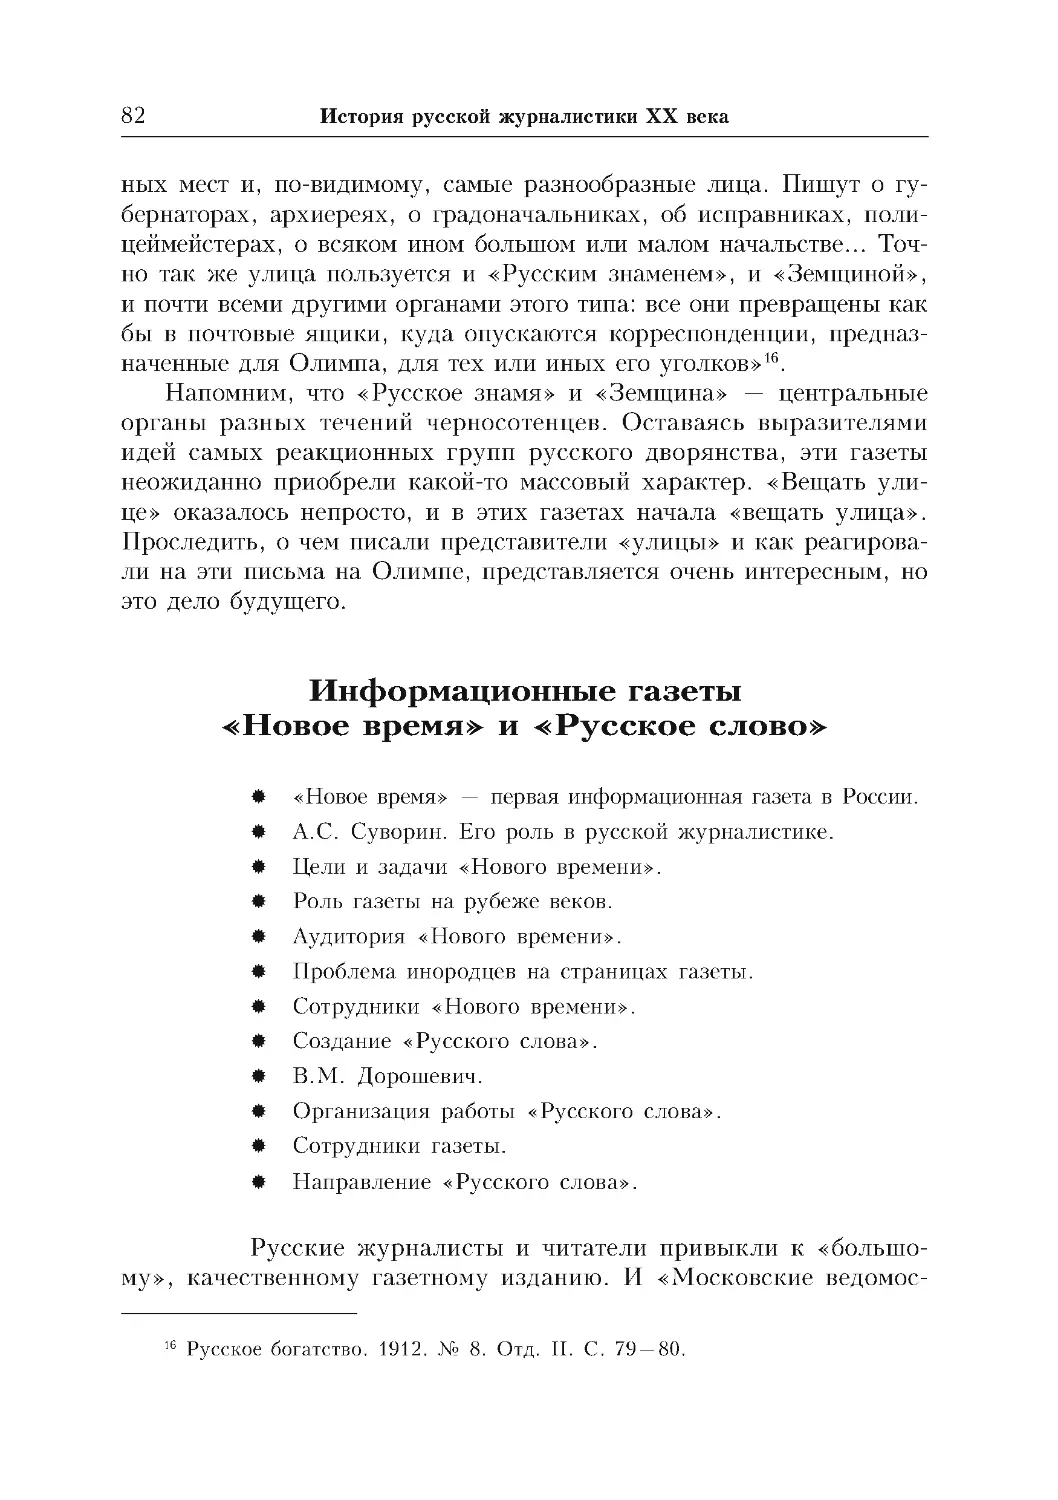 Информационные газеты «Новое время» и «Русское слово»